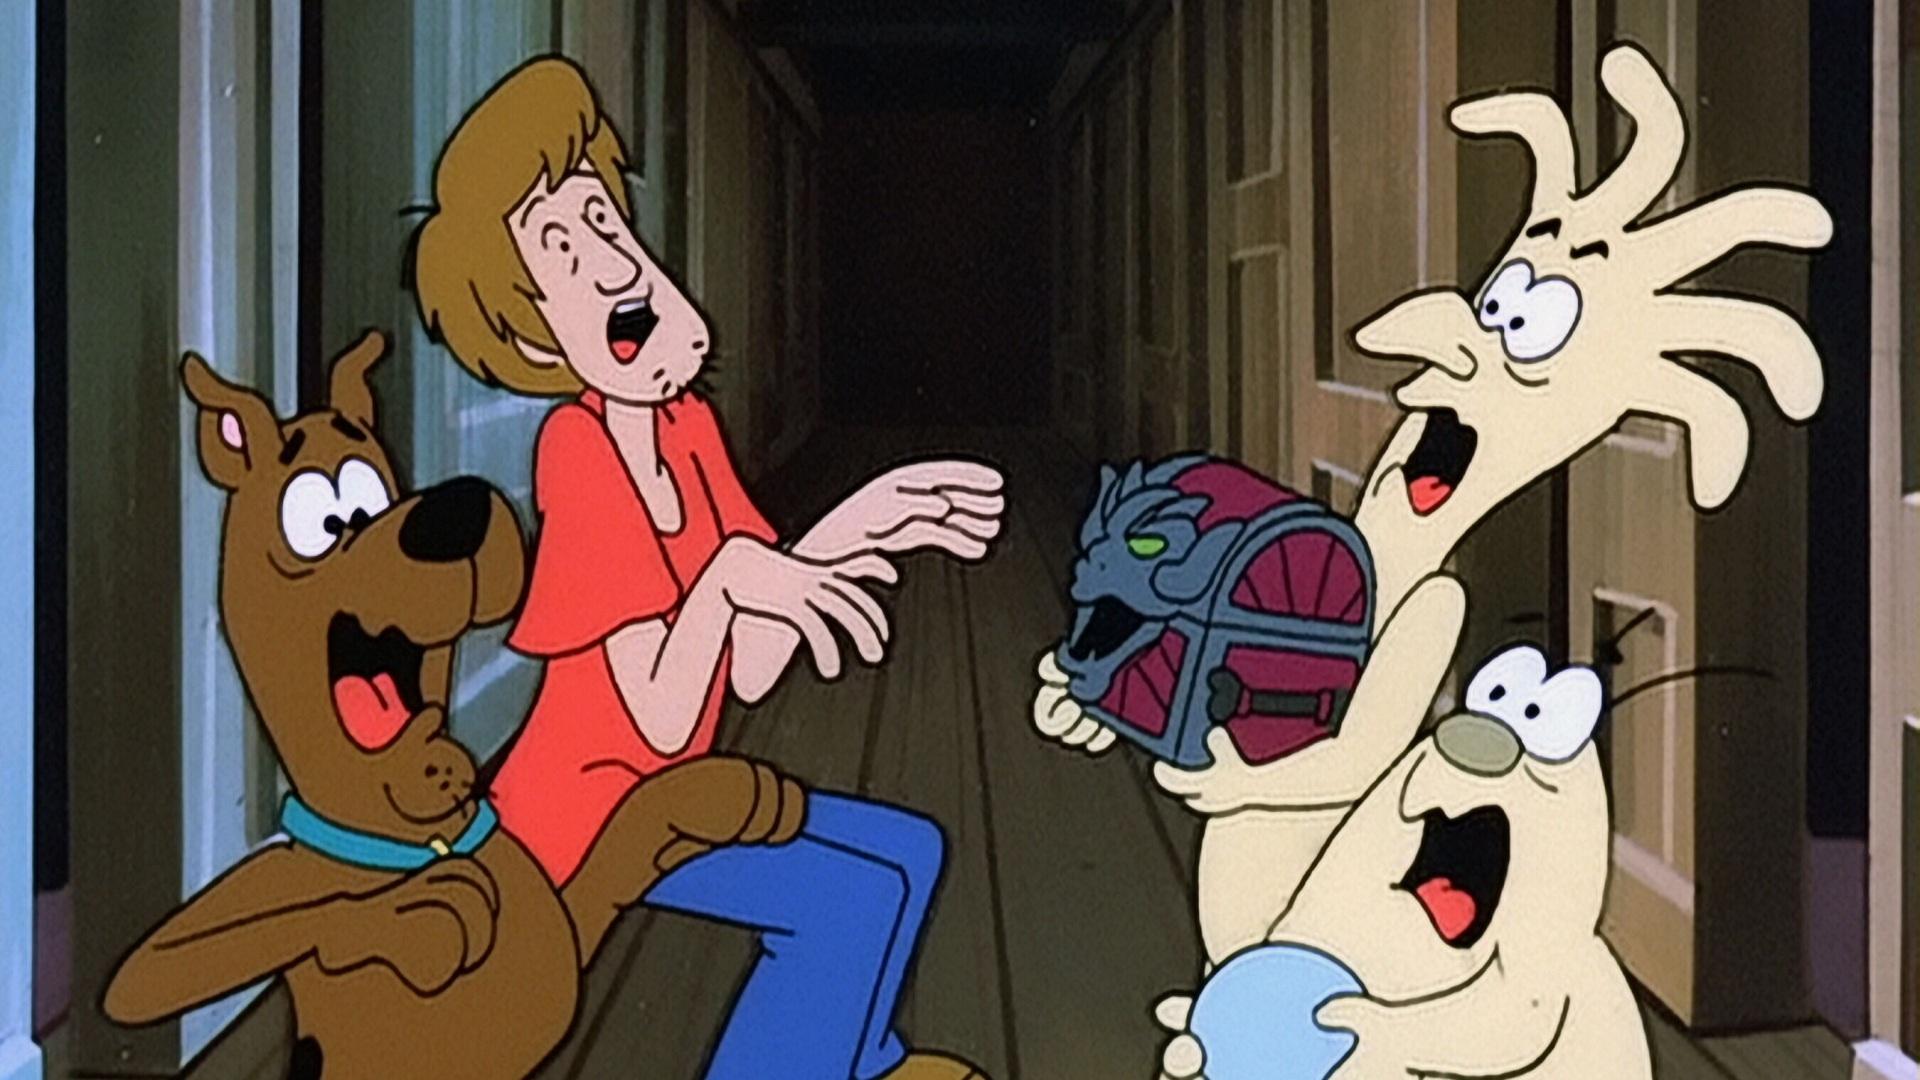 Los 13 fantasmas de Scooby Doo